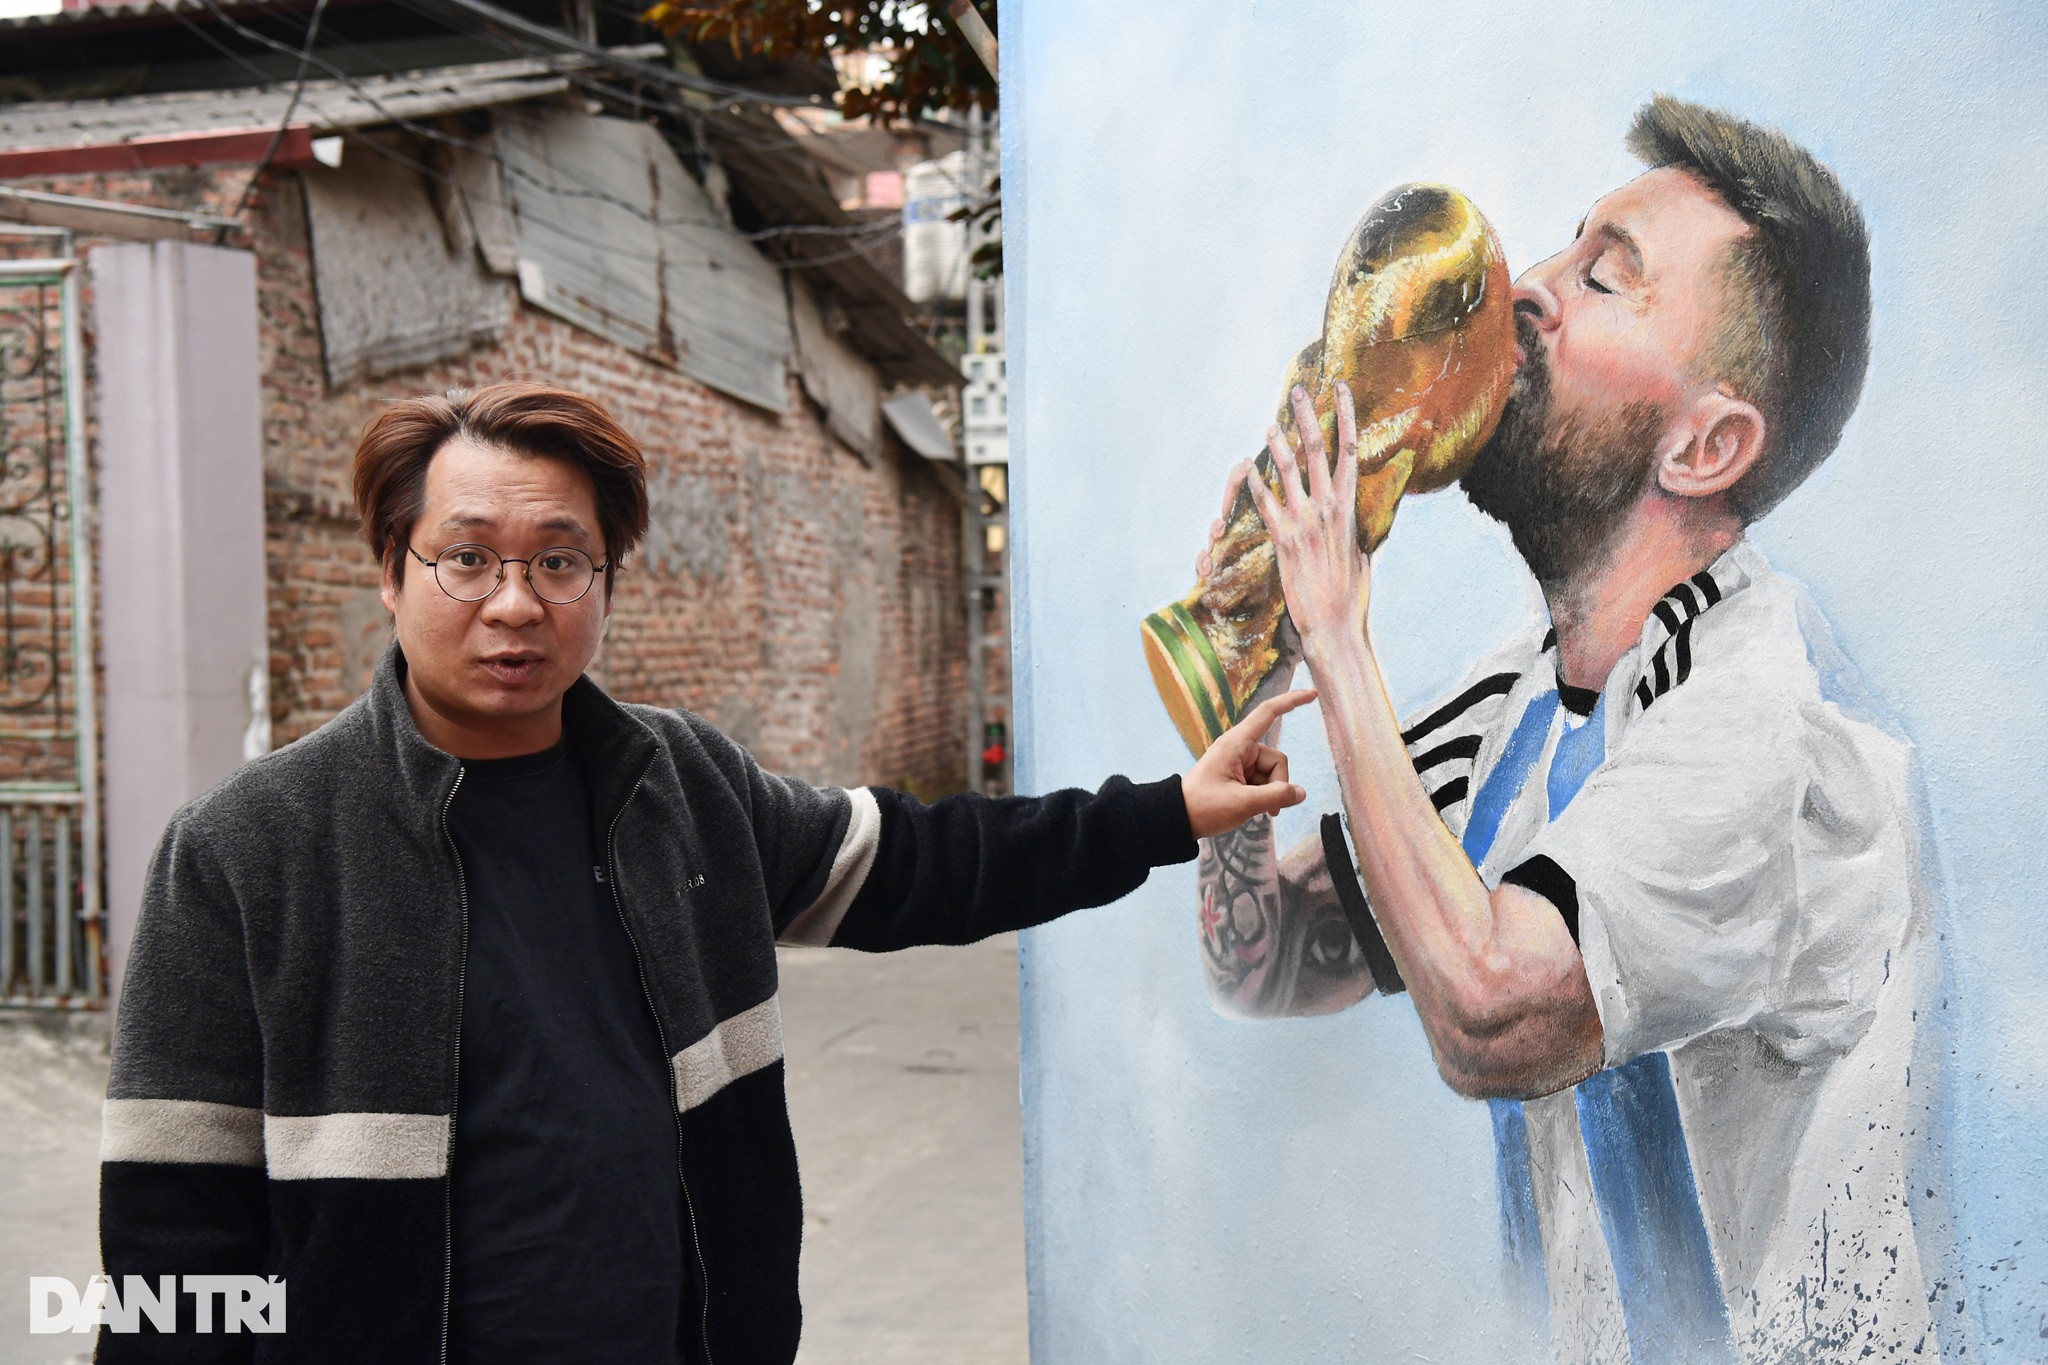 Thầy giáo đa tài Phạm Minh Tâm đã khiến cộng đồng mạng xôn xao khi vẽ một bức tranh rực rỡ sắc màu về Messi và đội tuyển Argentina. Khám phá tác phẩm nghệ thuật này để cảm nhận sự đam mê và tình yêu của Thầy giáo dành cho World Cup và bóng đá!